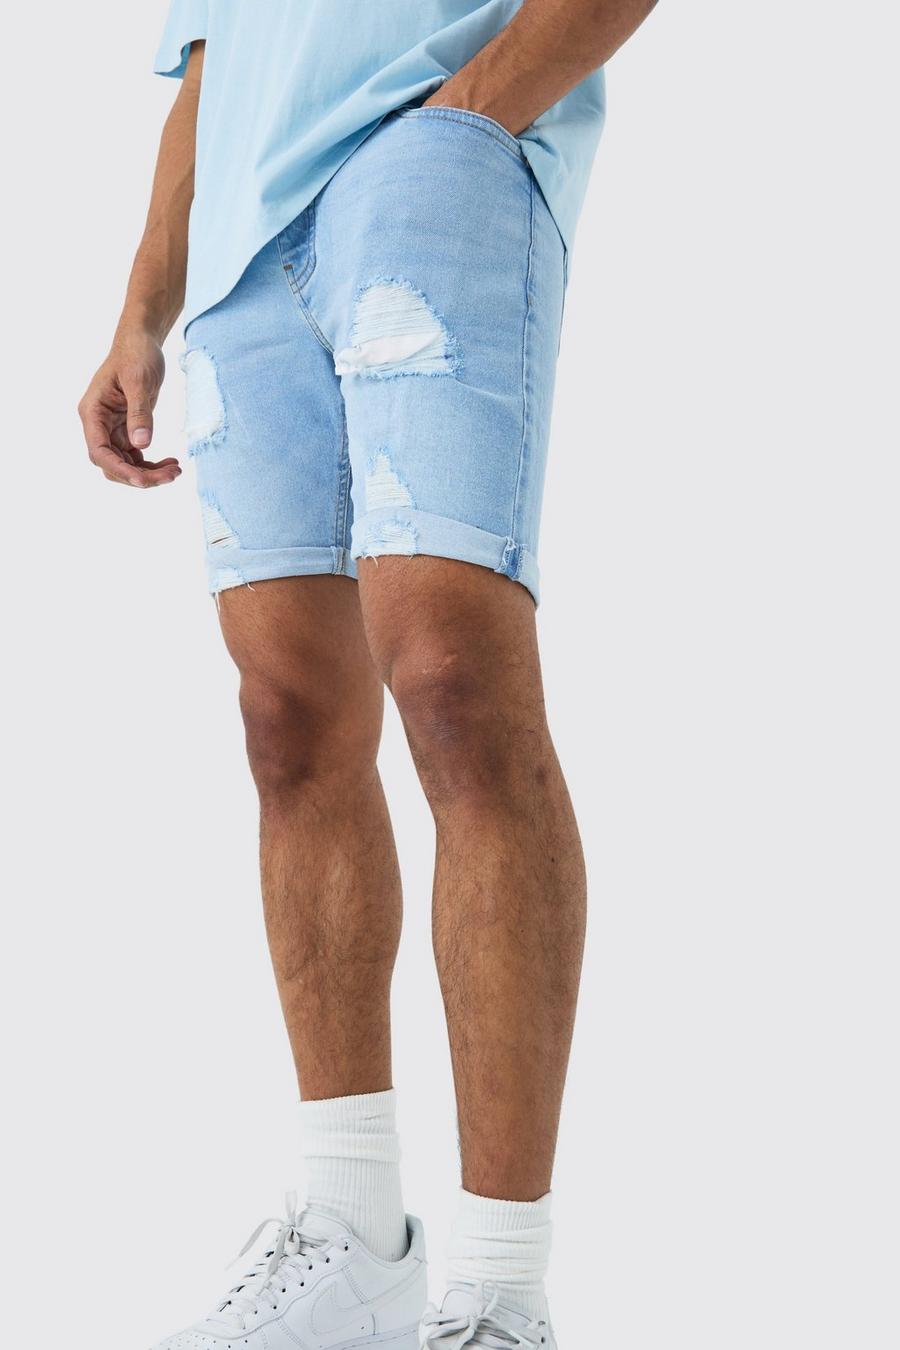 Pantalones cortos vaqueros pitillo elásticos desgastados en azul claro, Light blue